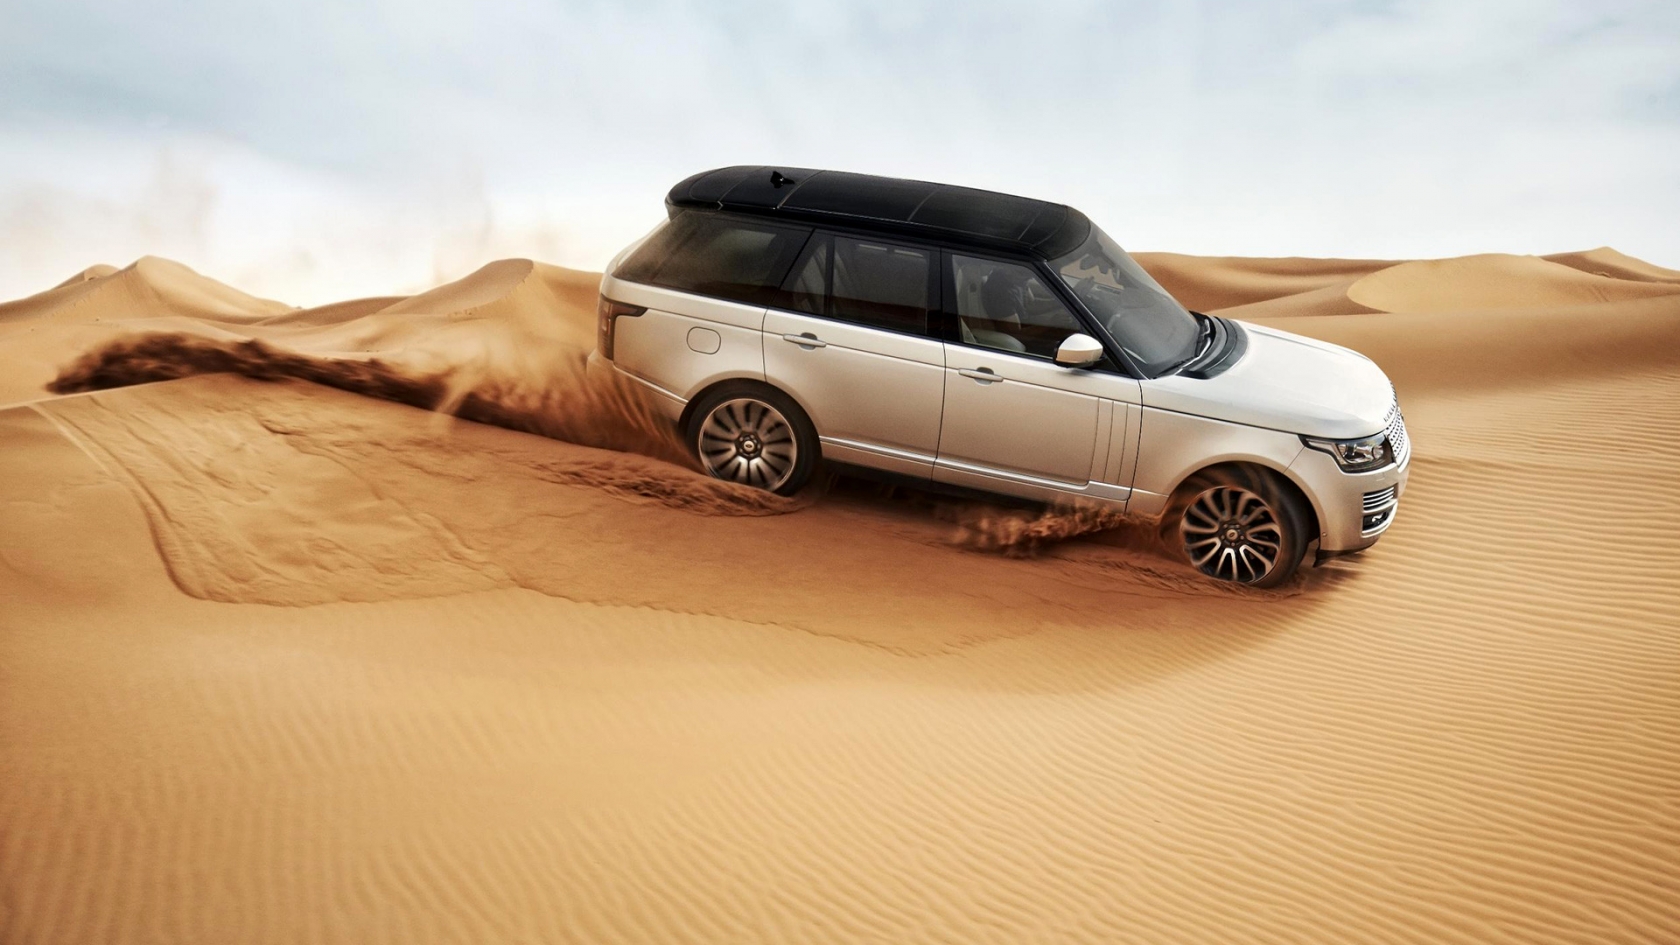 Range Rover in the Desert for 1680 x 945 HDTV resolution